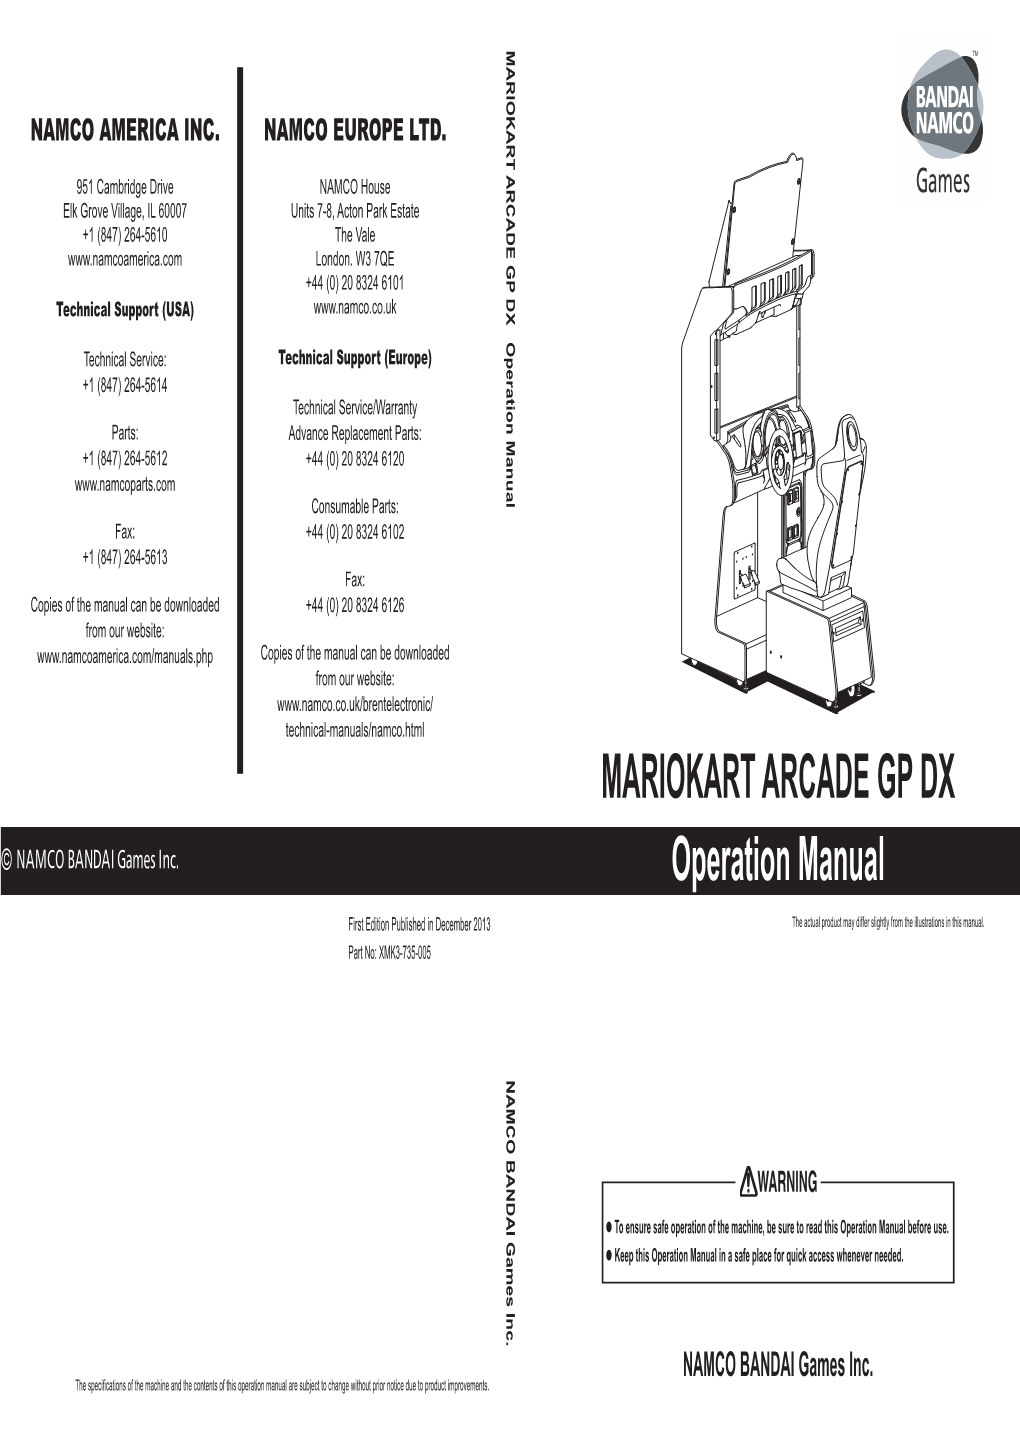 MARIOKART ARCADE GP DX Operation Manual